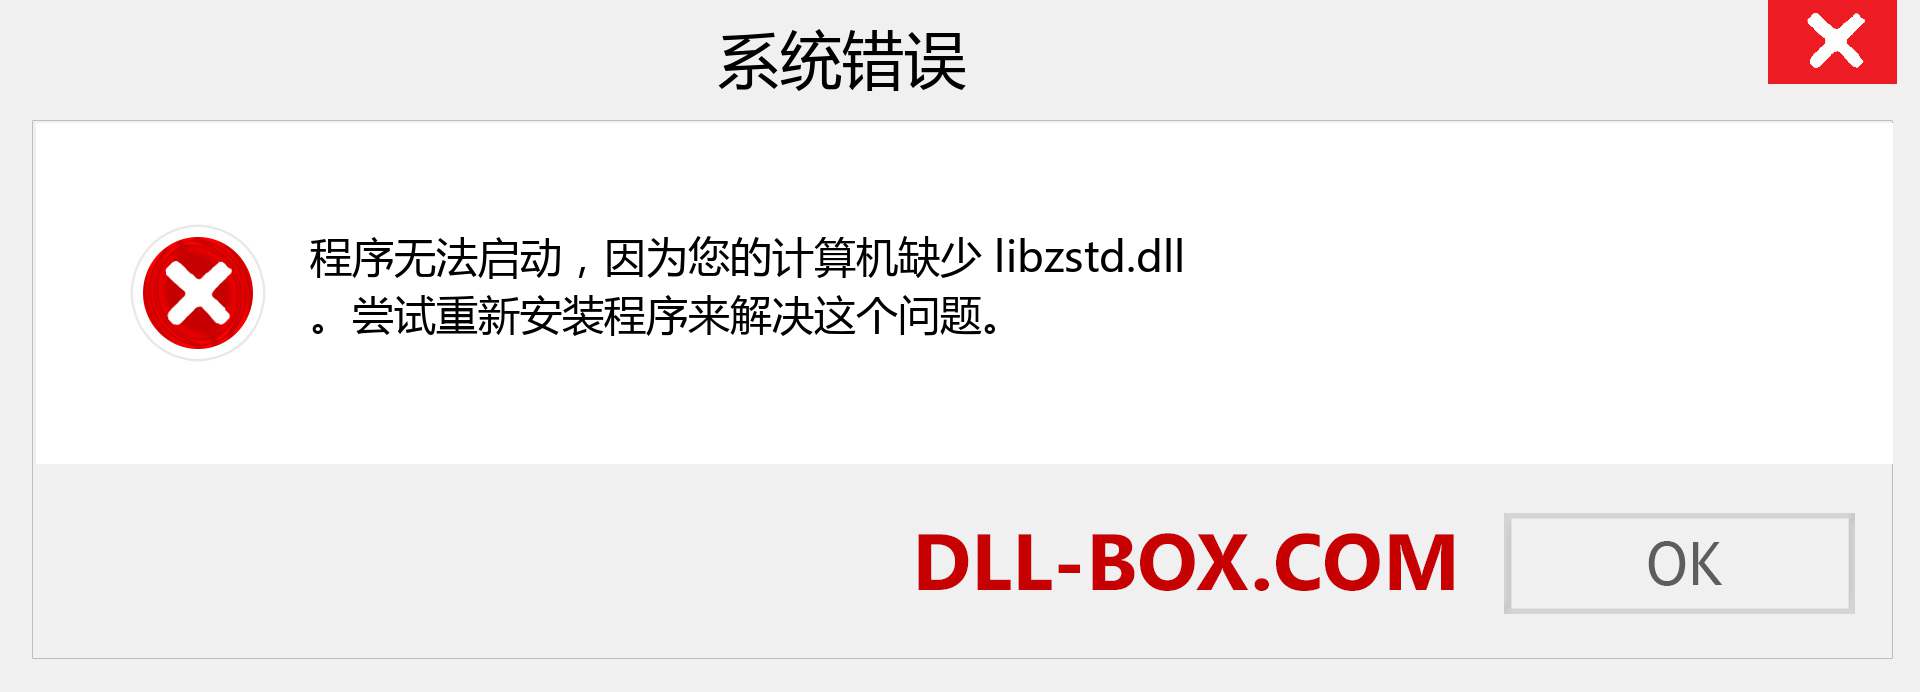 libzstd.dll 文件丢失？。 适用于 Windows 7、8、10 的下载 - 修复 Windows、照片、图像上的 libzstd dll 丢失错误